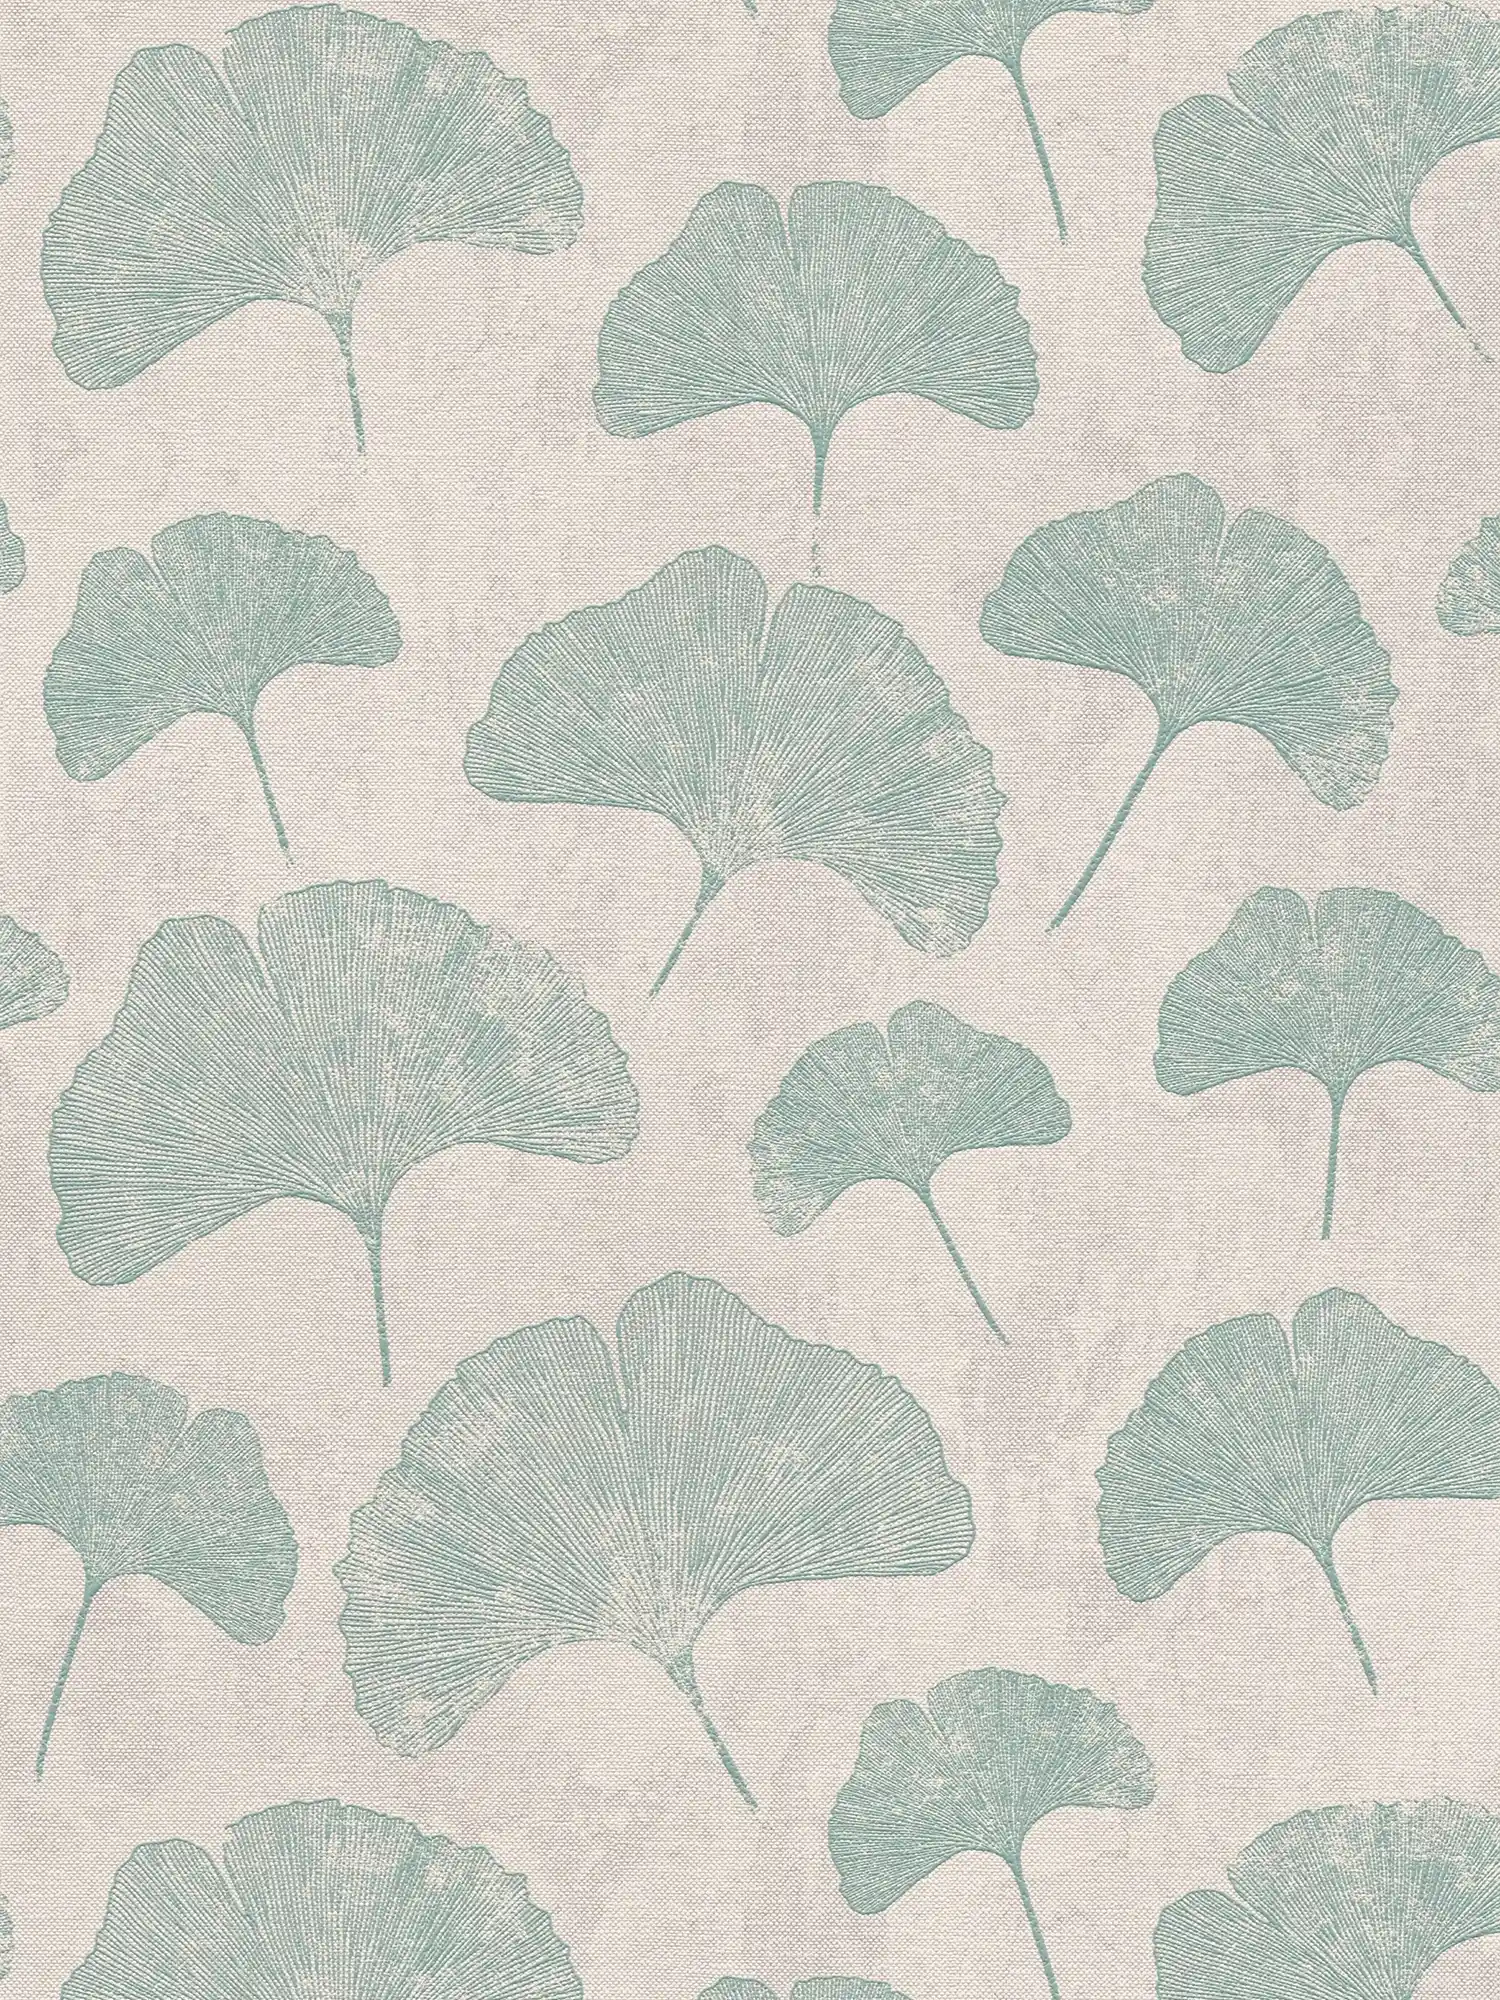 Blätter-Tapete floral matt strukturiert – Grau, Weiß, Mint
